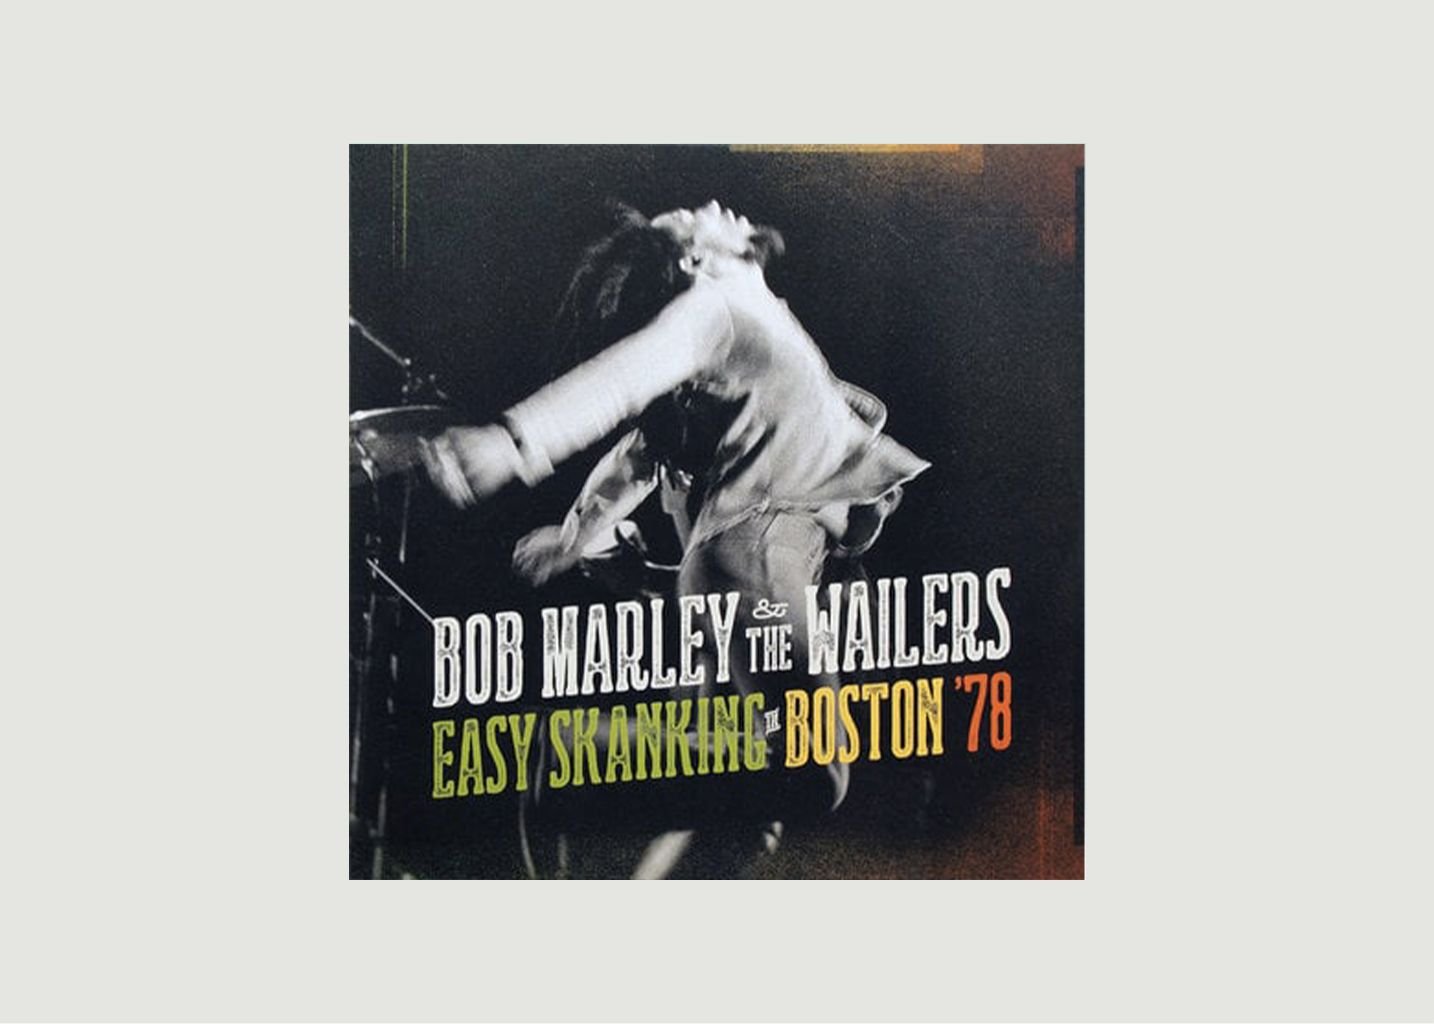 Vinyle Easy skanking in boston 78 - Bob Marley  - La vinyl-thèque idéale